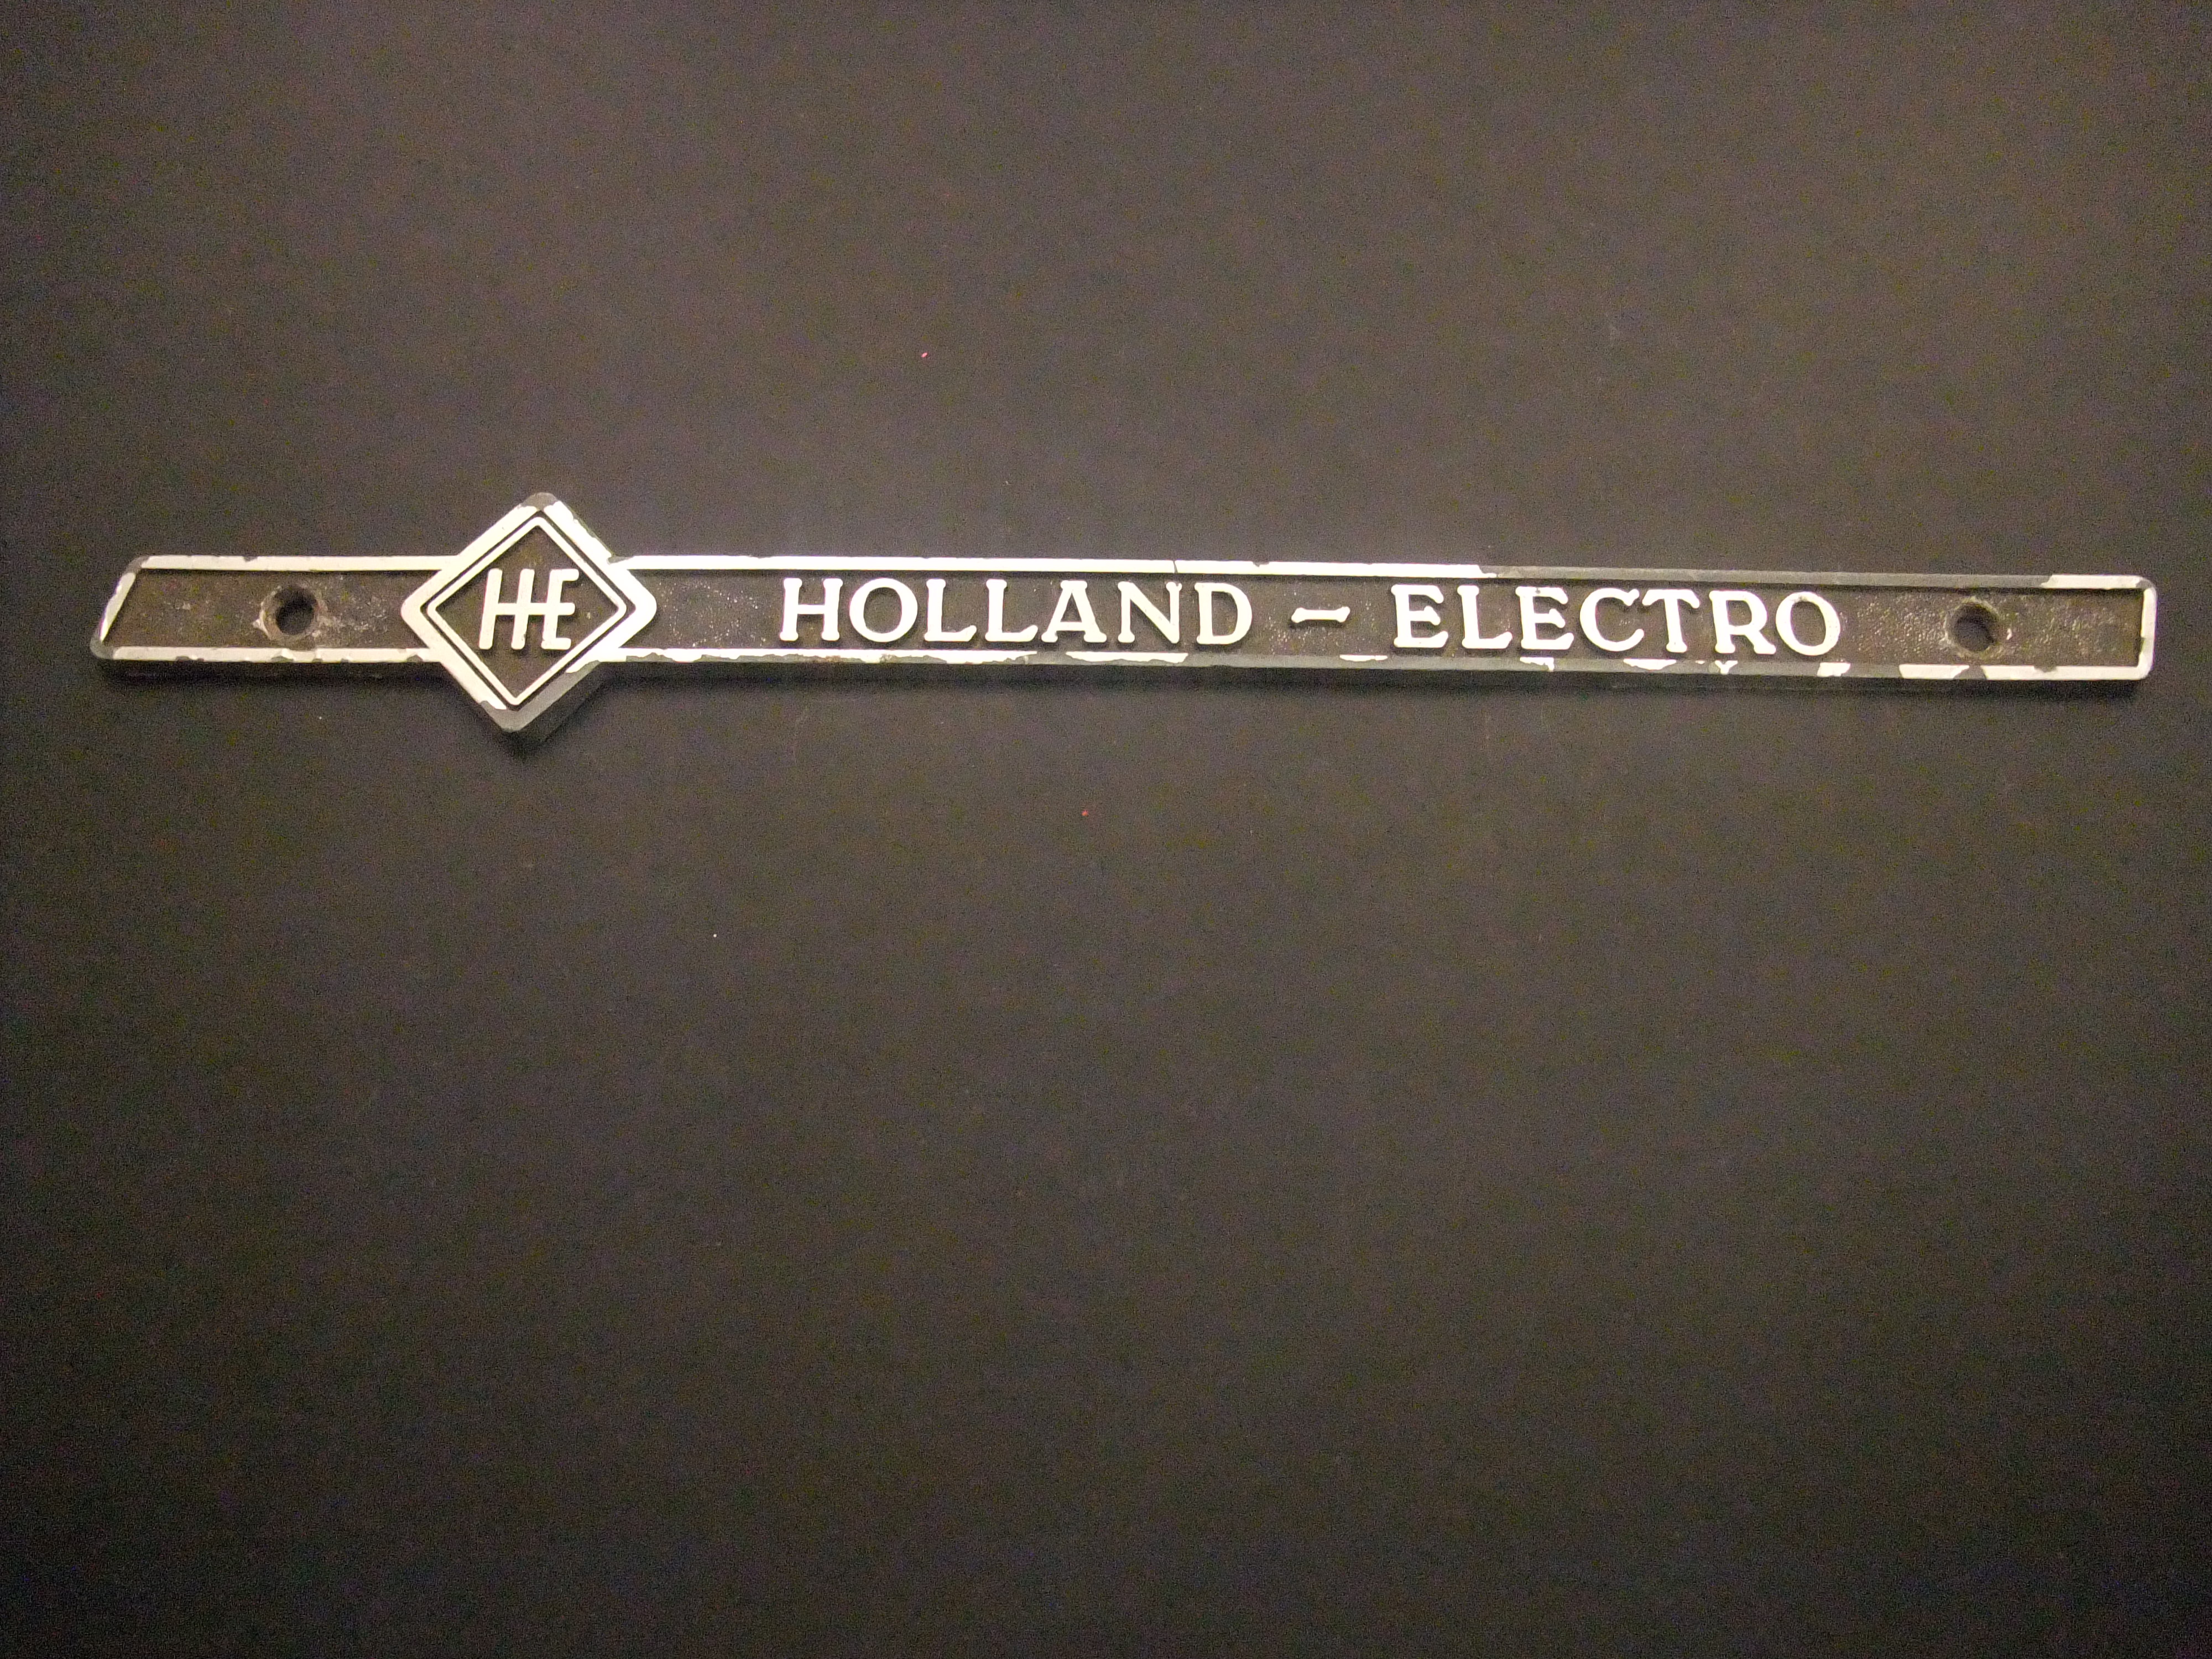 Holland - Electro huishoudelijke apparaten oud plaatje